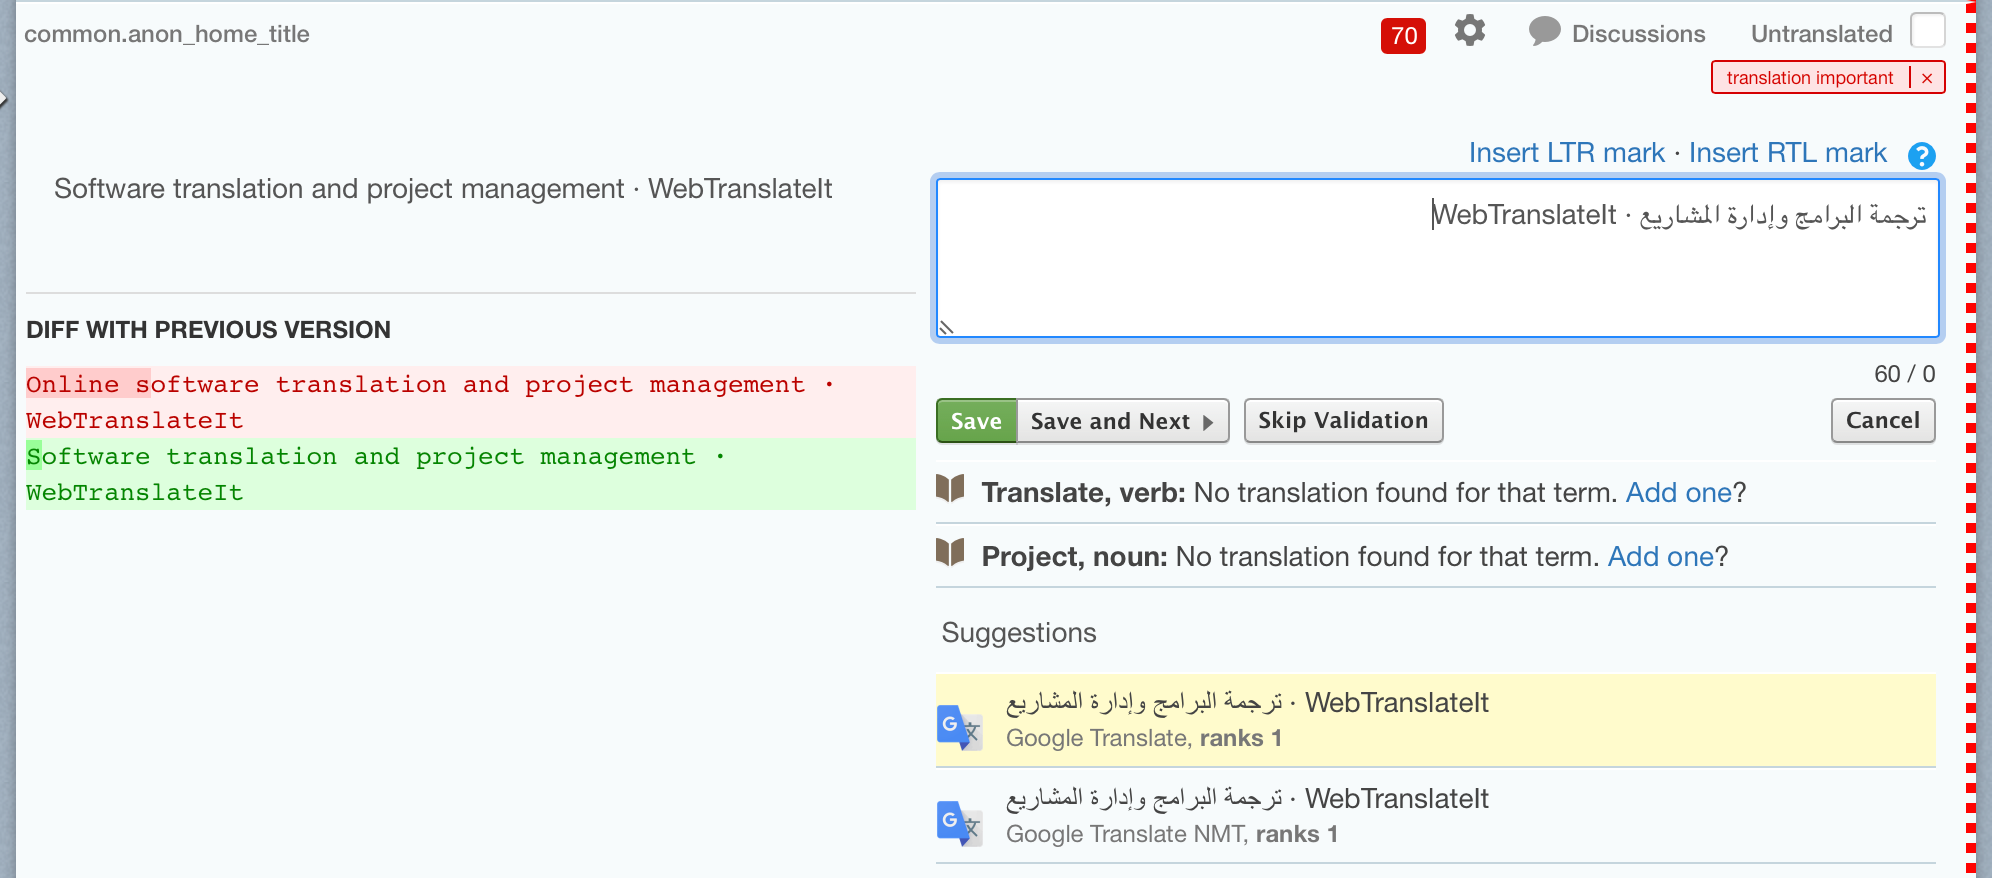 WebTranslateIt’s Bi-Directional Text support